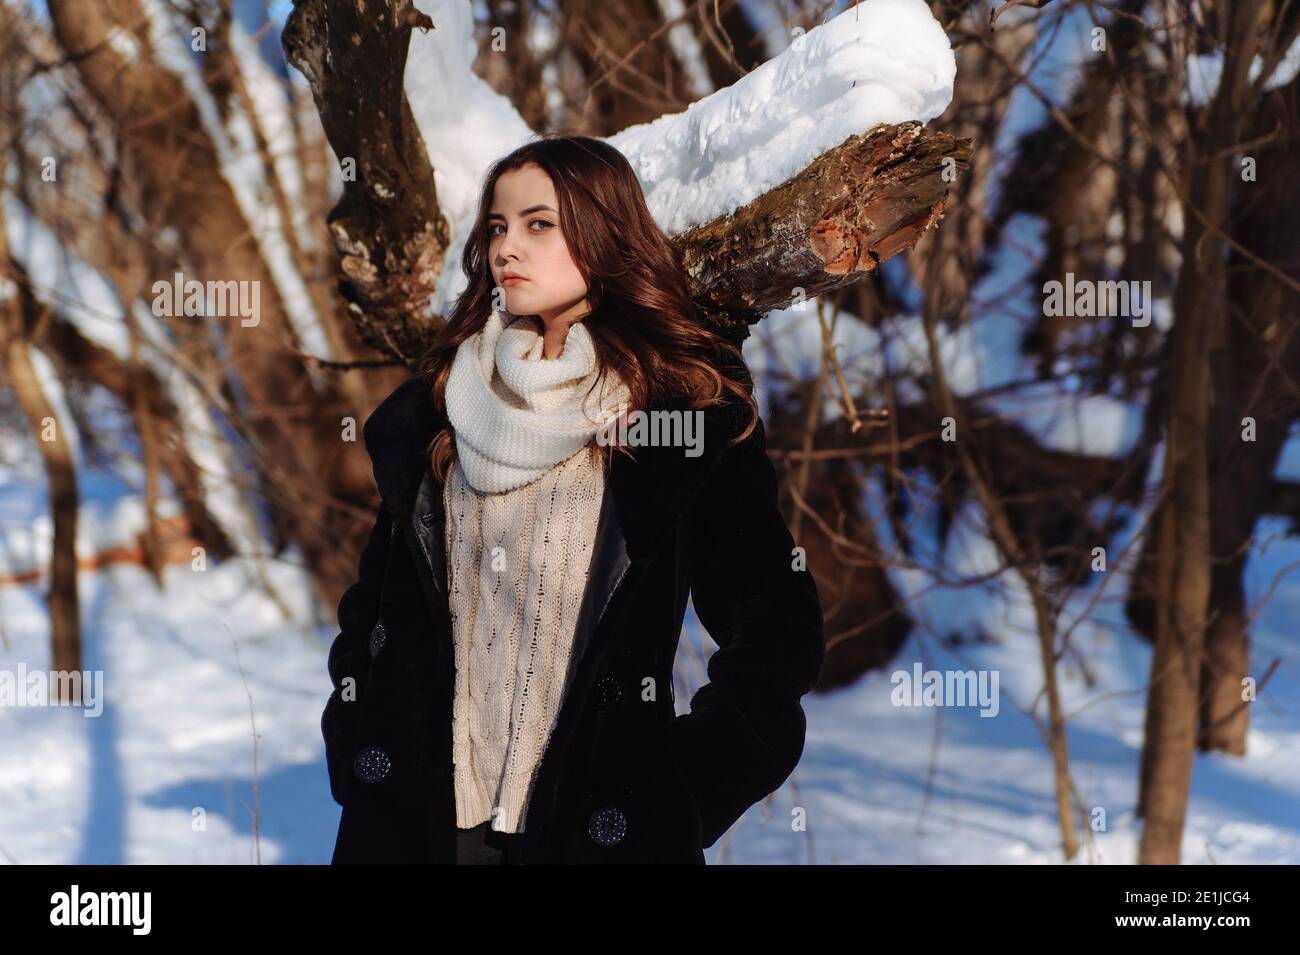 Chica en el abrigo negro y bufanda blanca al fondo de los árboles cubiertos de nieve. Soleado día de invierno Foto de stock